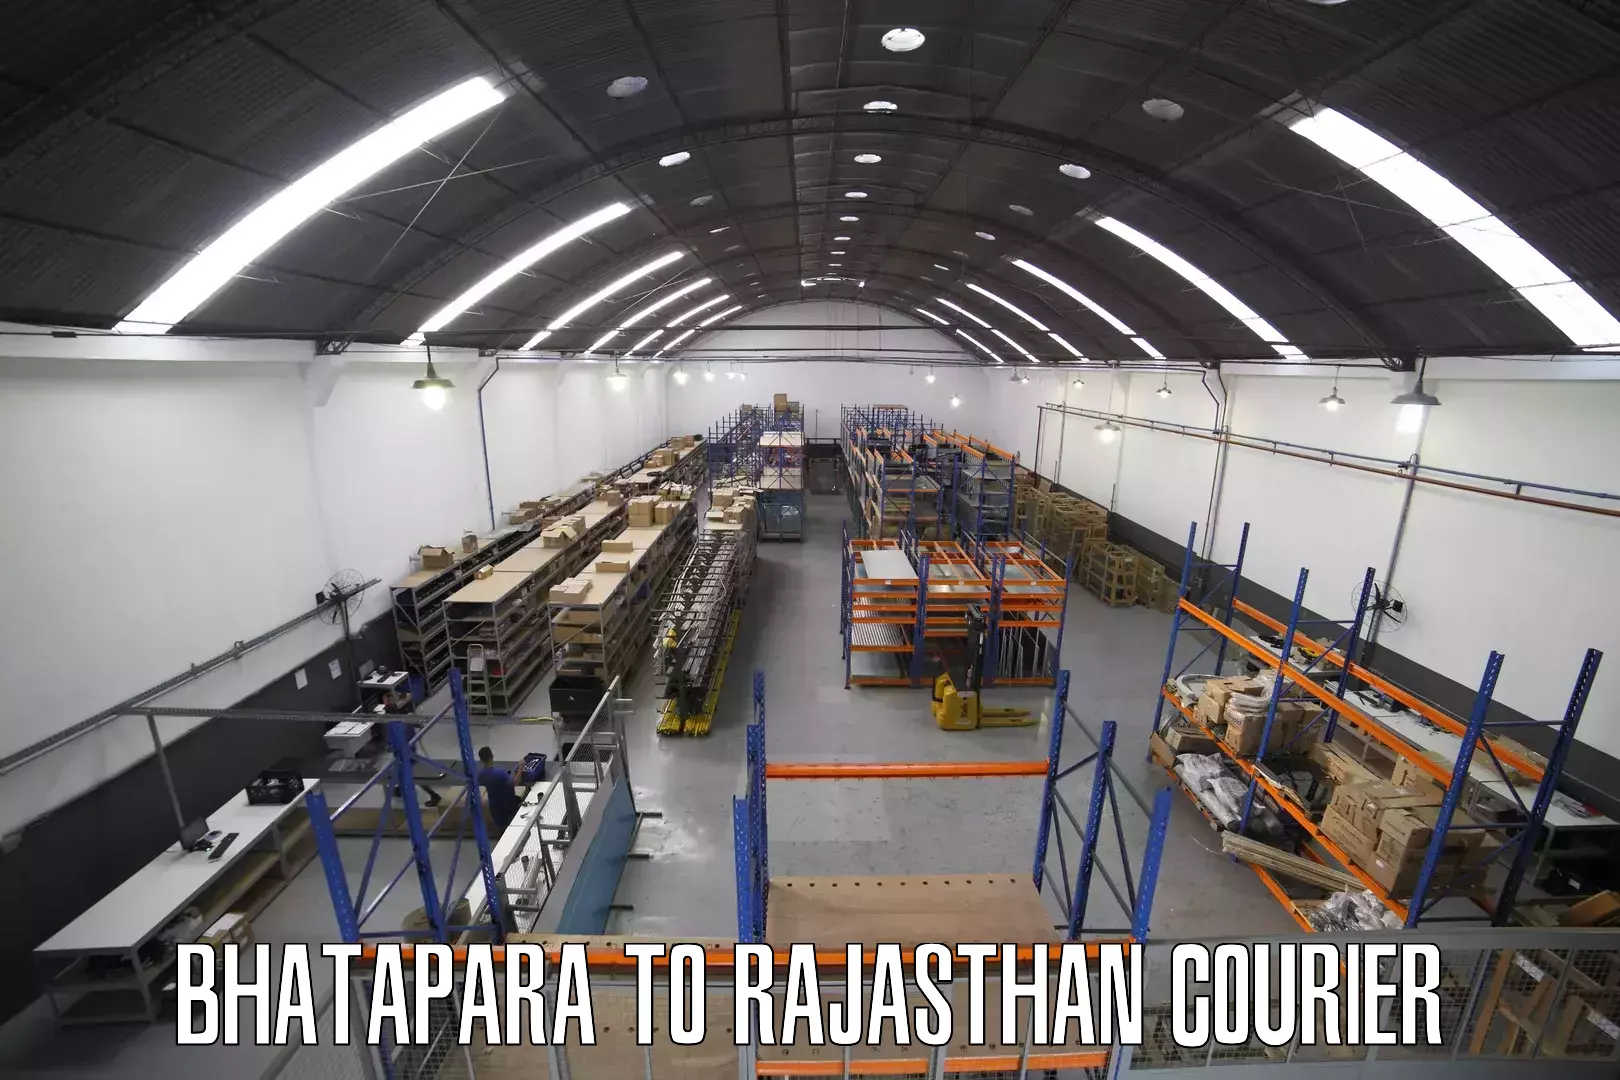 Reliable freight solutions Bhatapara to Nadoti